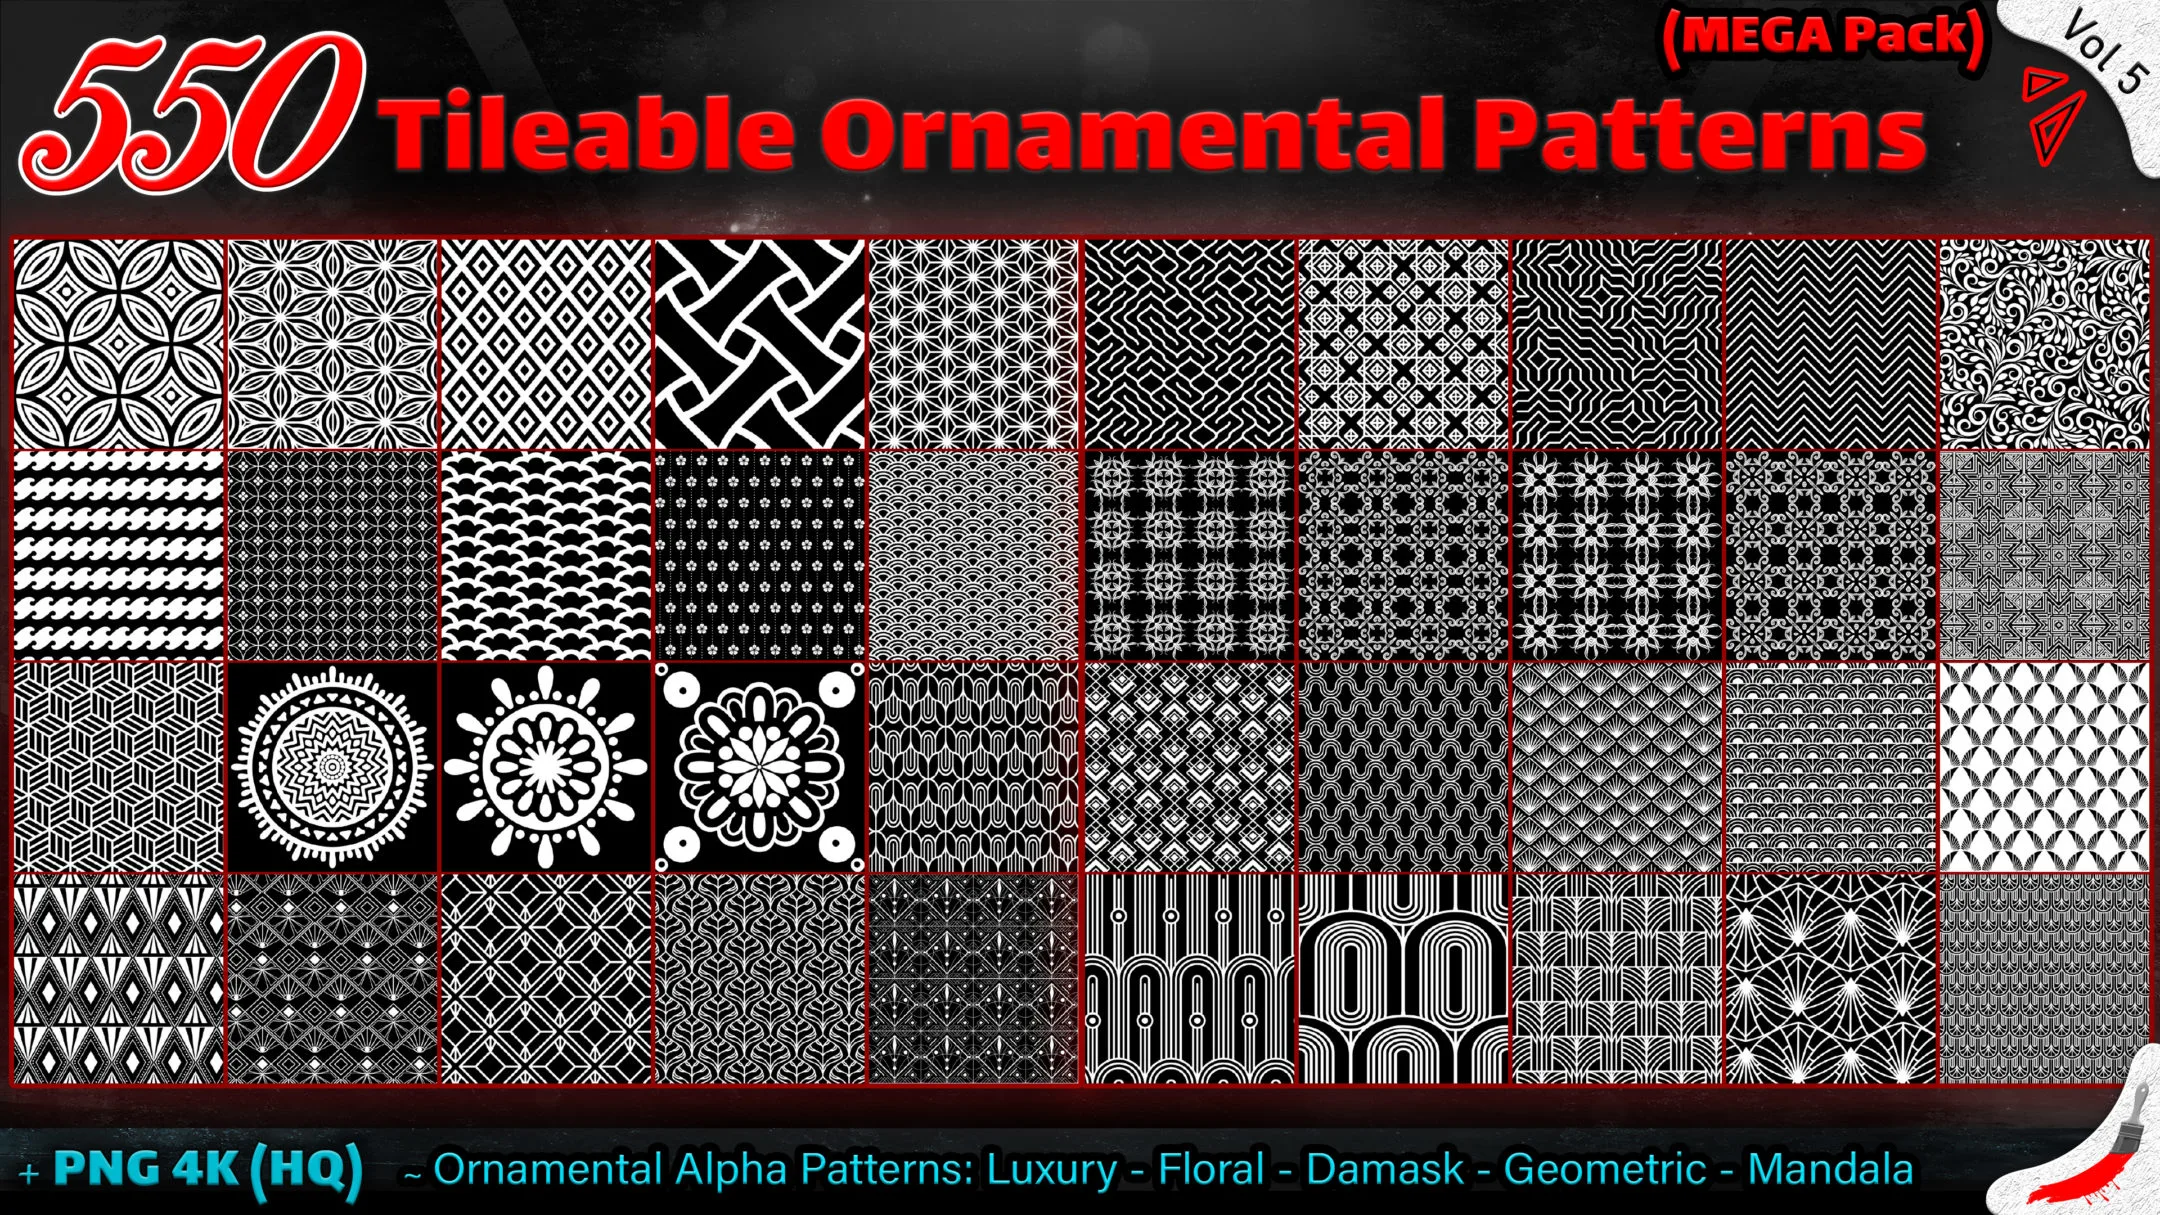 550 Tileable Ornamental Patterns (MEGA Pack) - Vol 5